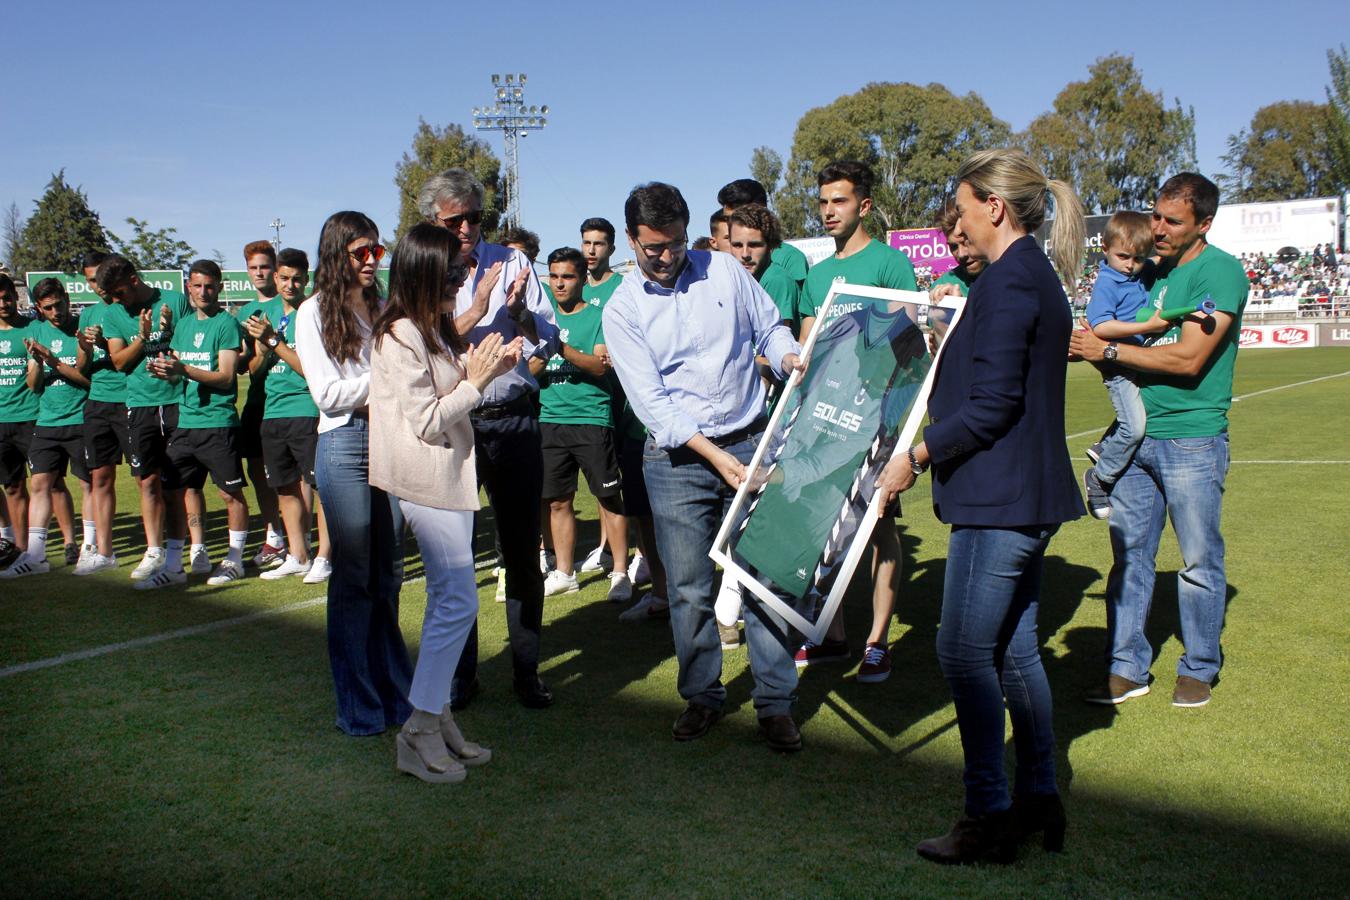 La alcadlesa entregó a la familia del joven Jacabo Aragón una camiseta firmada por todos los jugadores